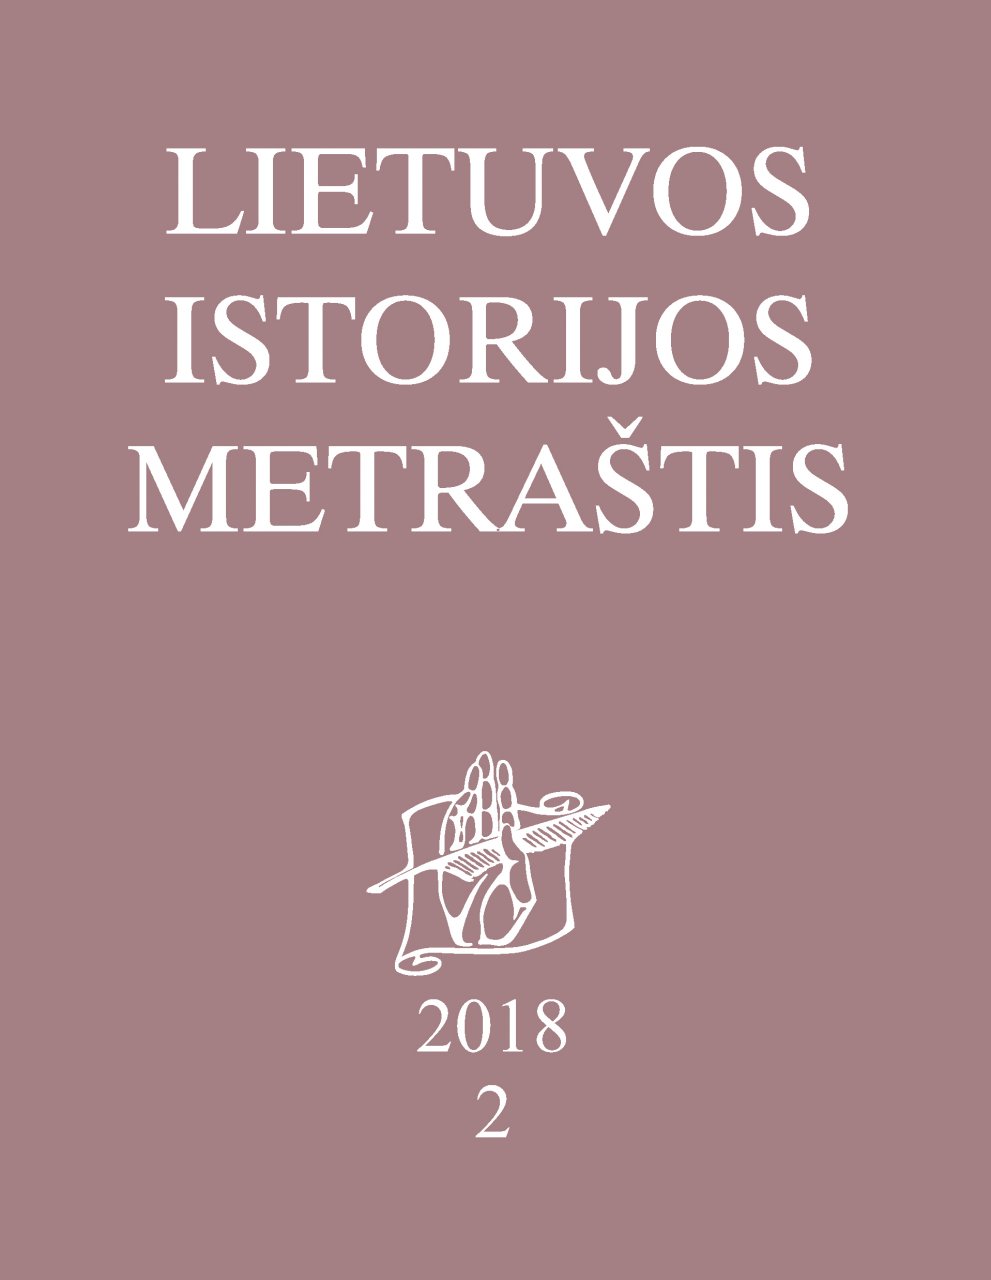 Lietuvos istorijos metraštis 2018 metai 2